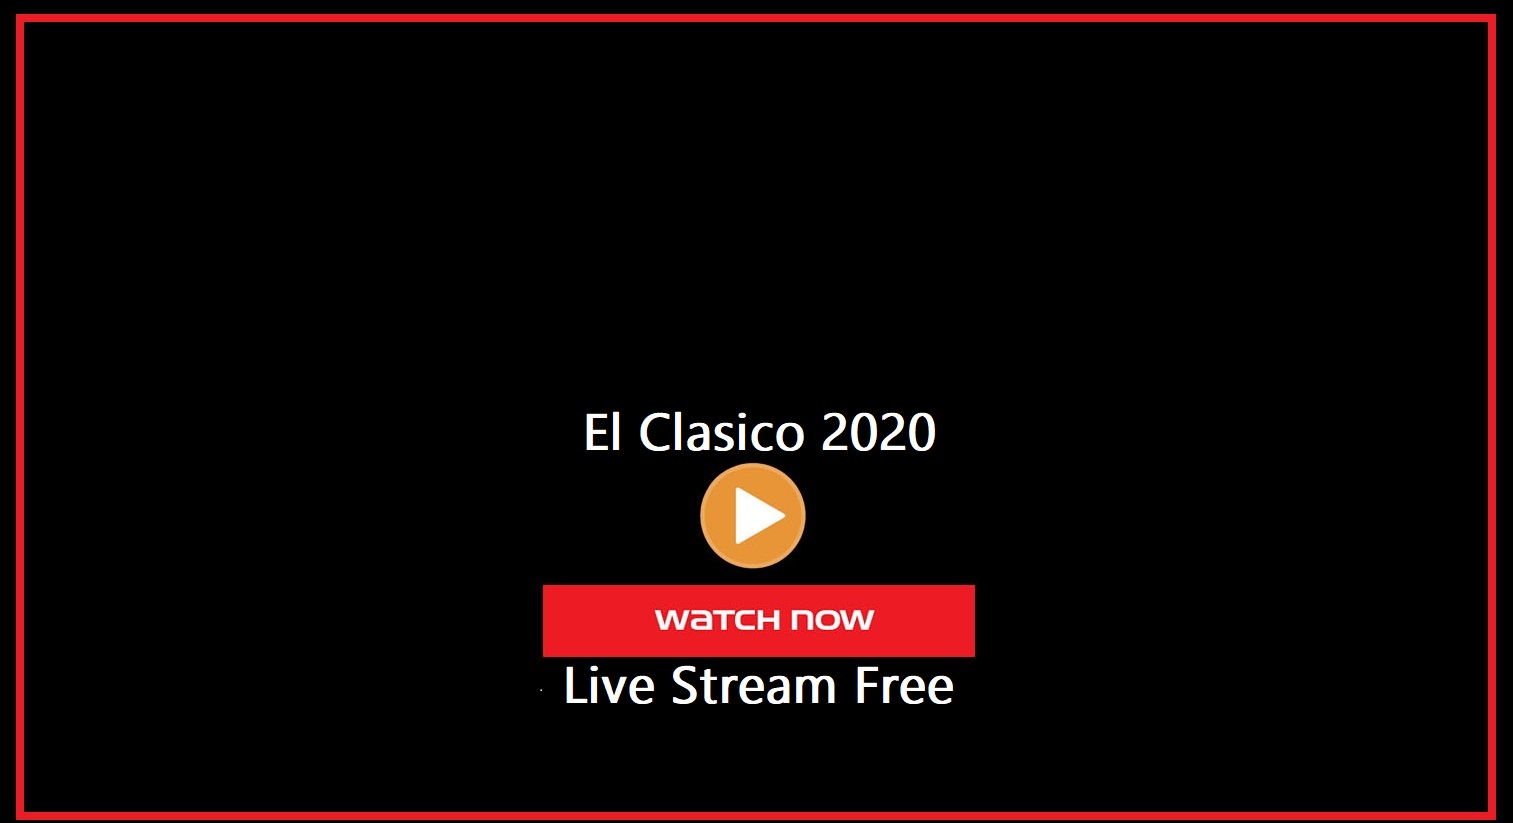 El Clasico Free Live Stream